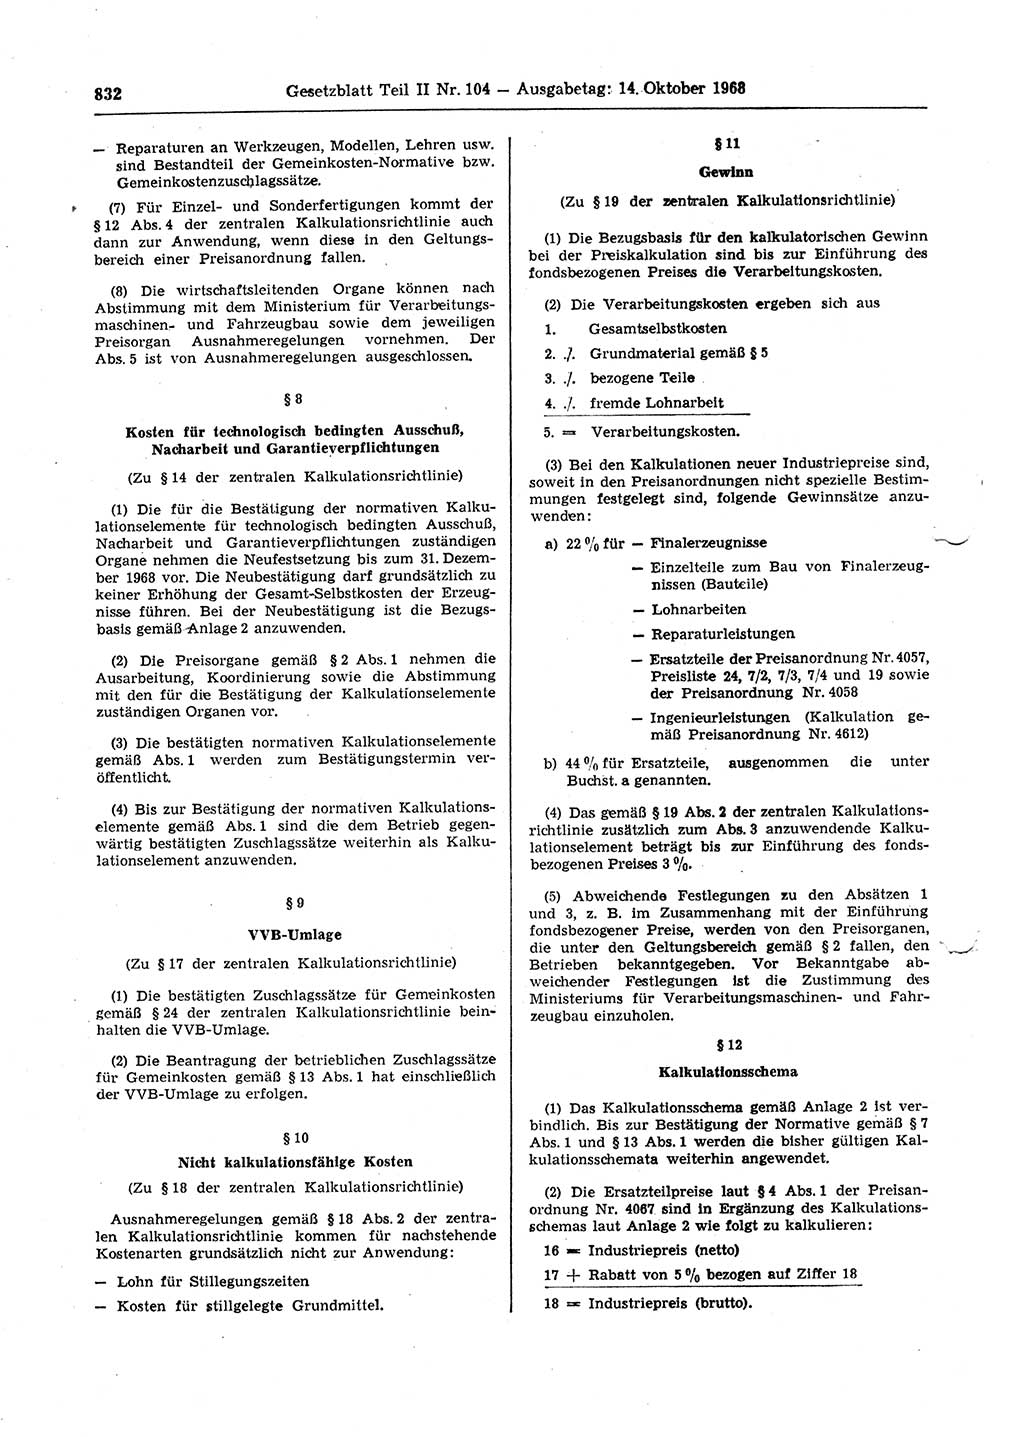 Gesetzblatt (GBl.) der Deutschen Demokratischen Republik (DDR) Teil ⅠⅠ 1968, Seite 832 (GBl. DDR ⅠⅠ 1968, S. 832)